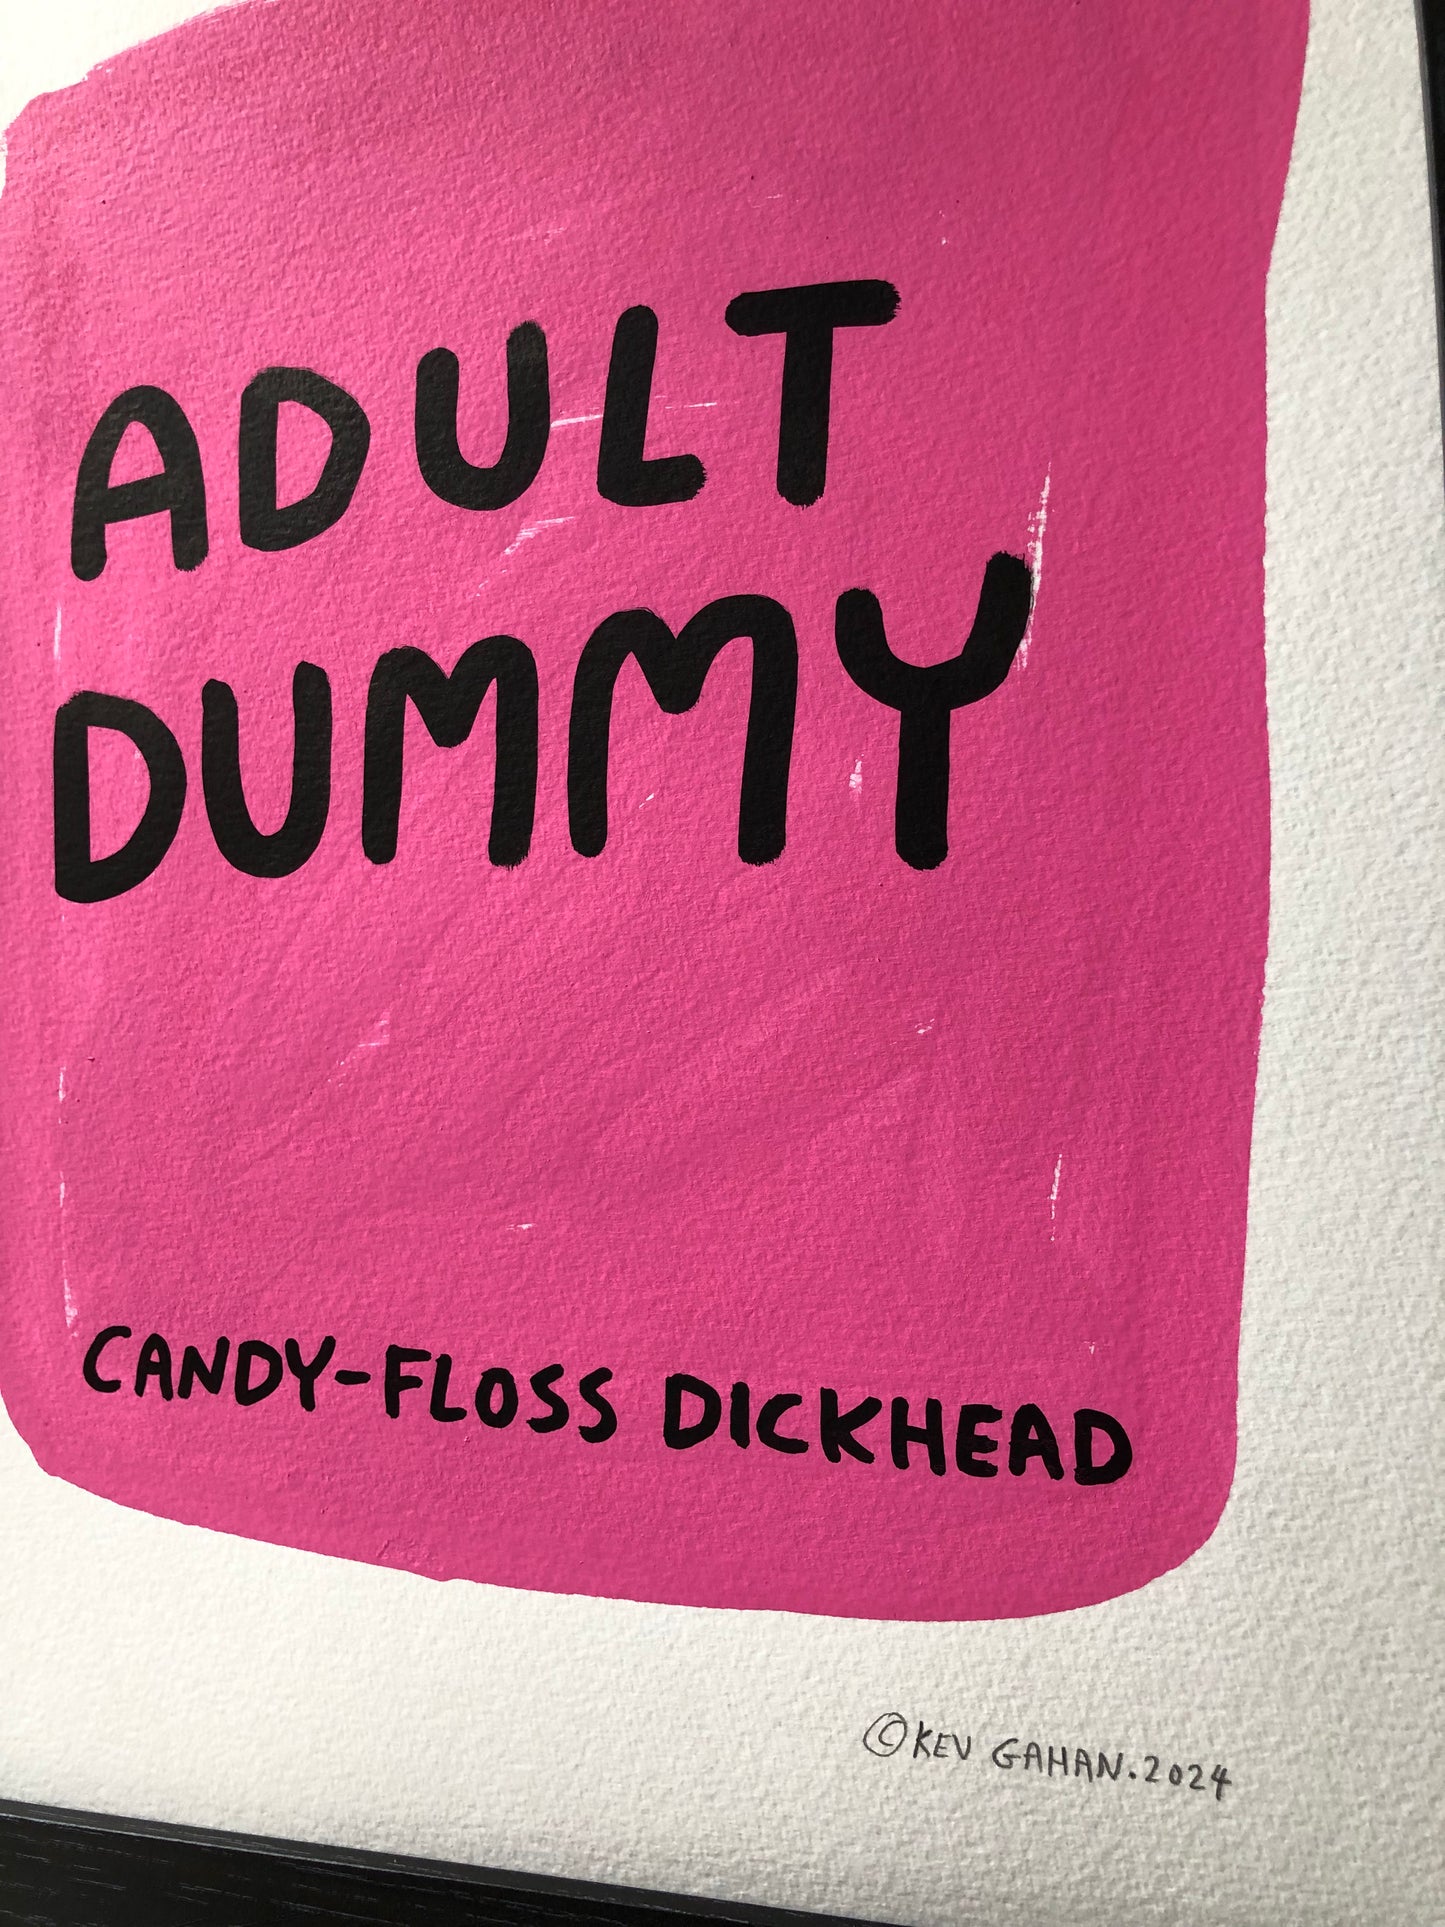 Vape / Adult Dummy - Original Artwork